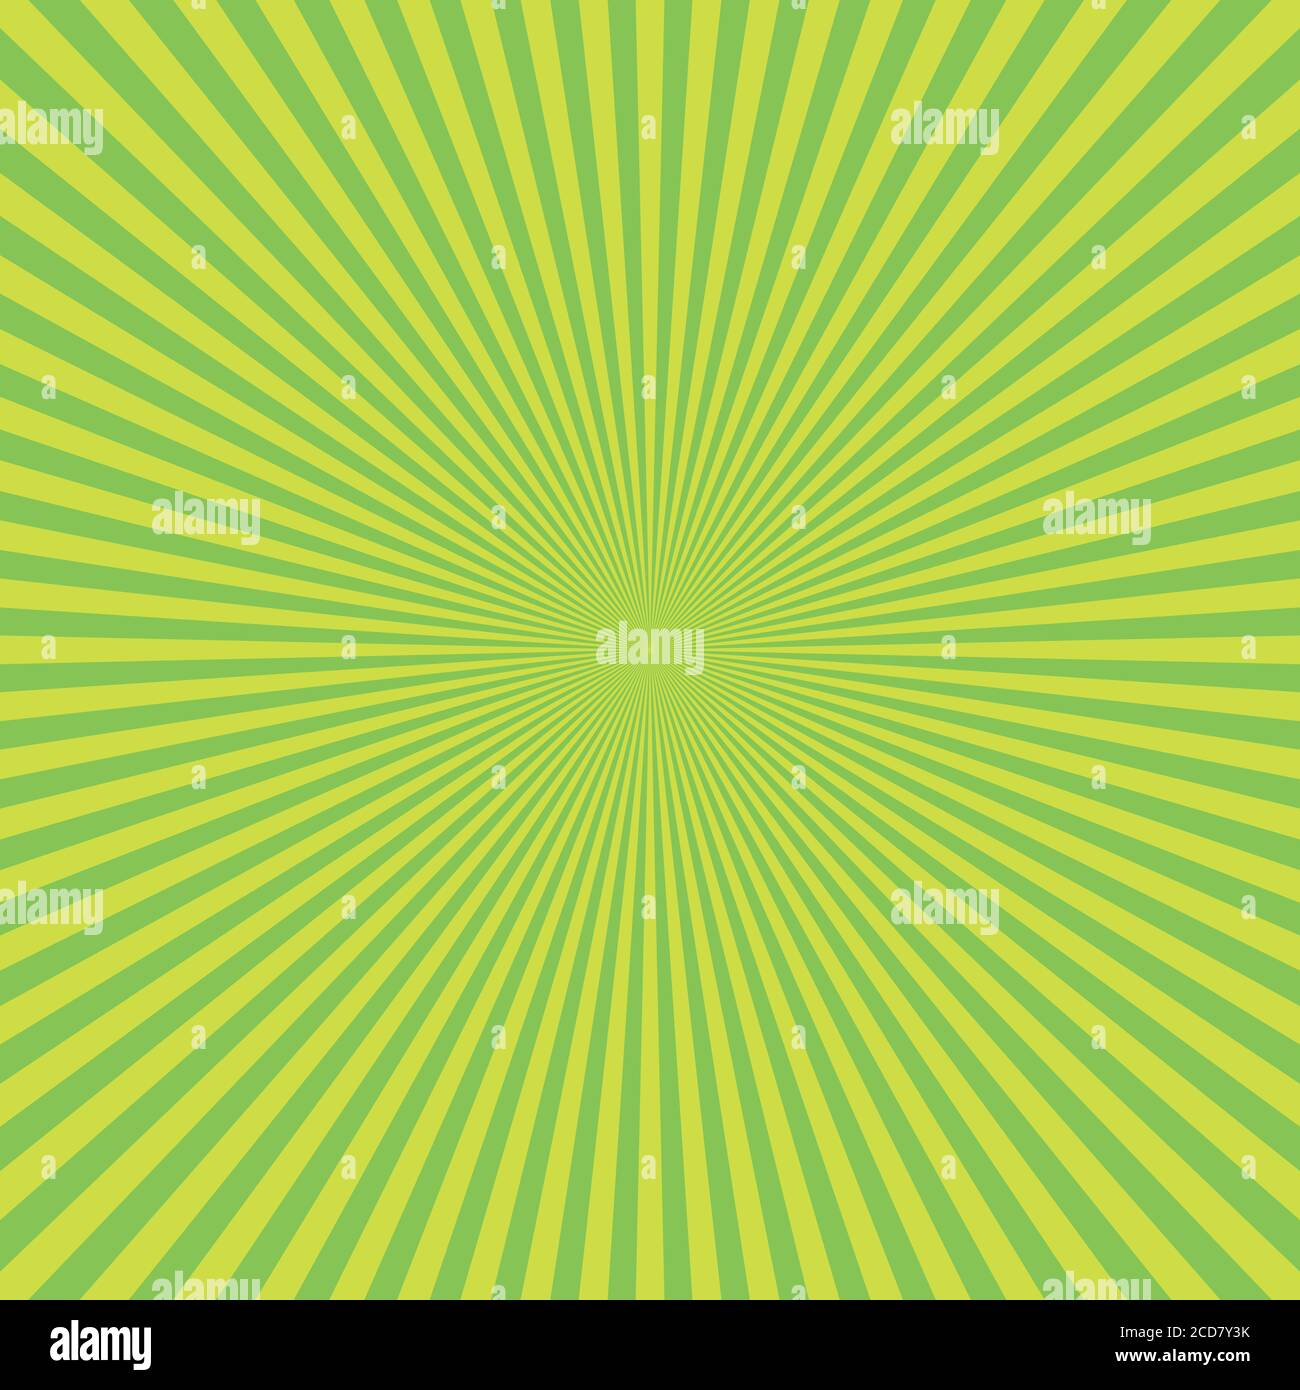 Astratto verde Sunburst backgound. Raggi vettoriali in disposizione radiale. Illustrazione Vettoriale